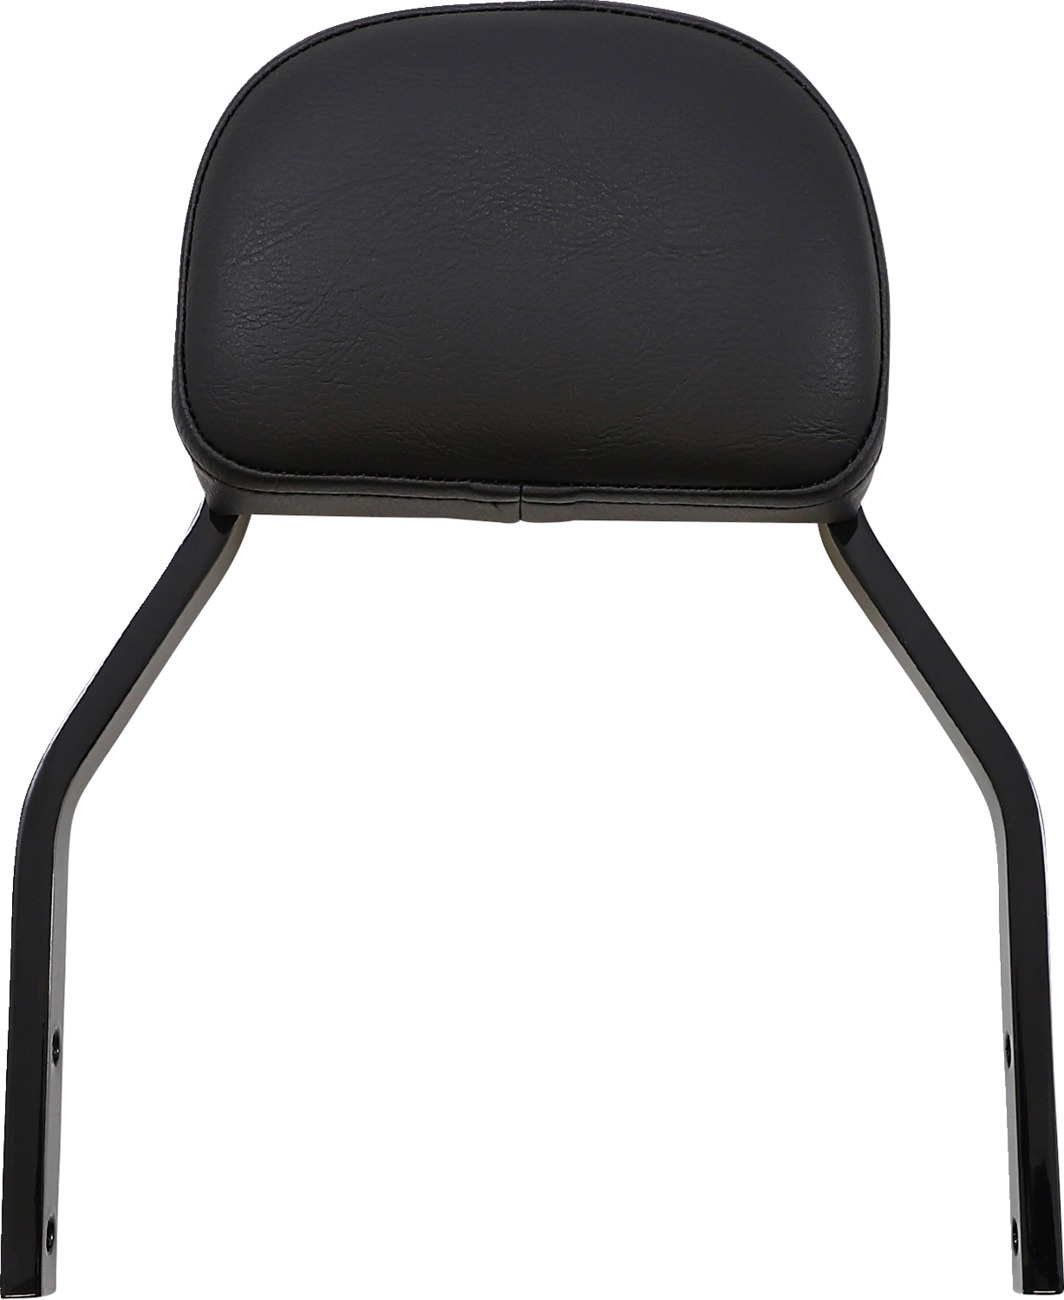 Detachable Backrests - Detachable Bckrst Mini Sqr Blk - Click Image to Close